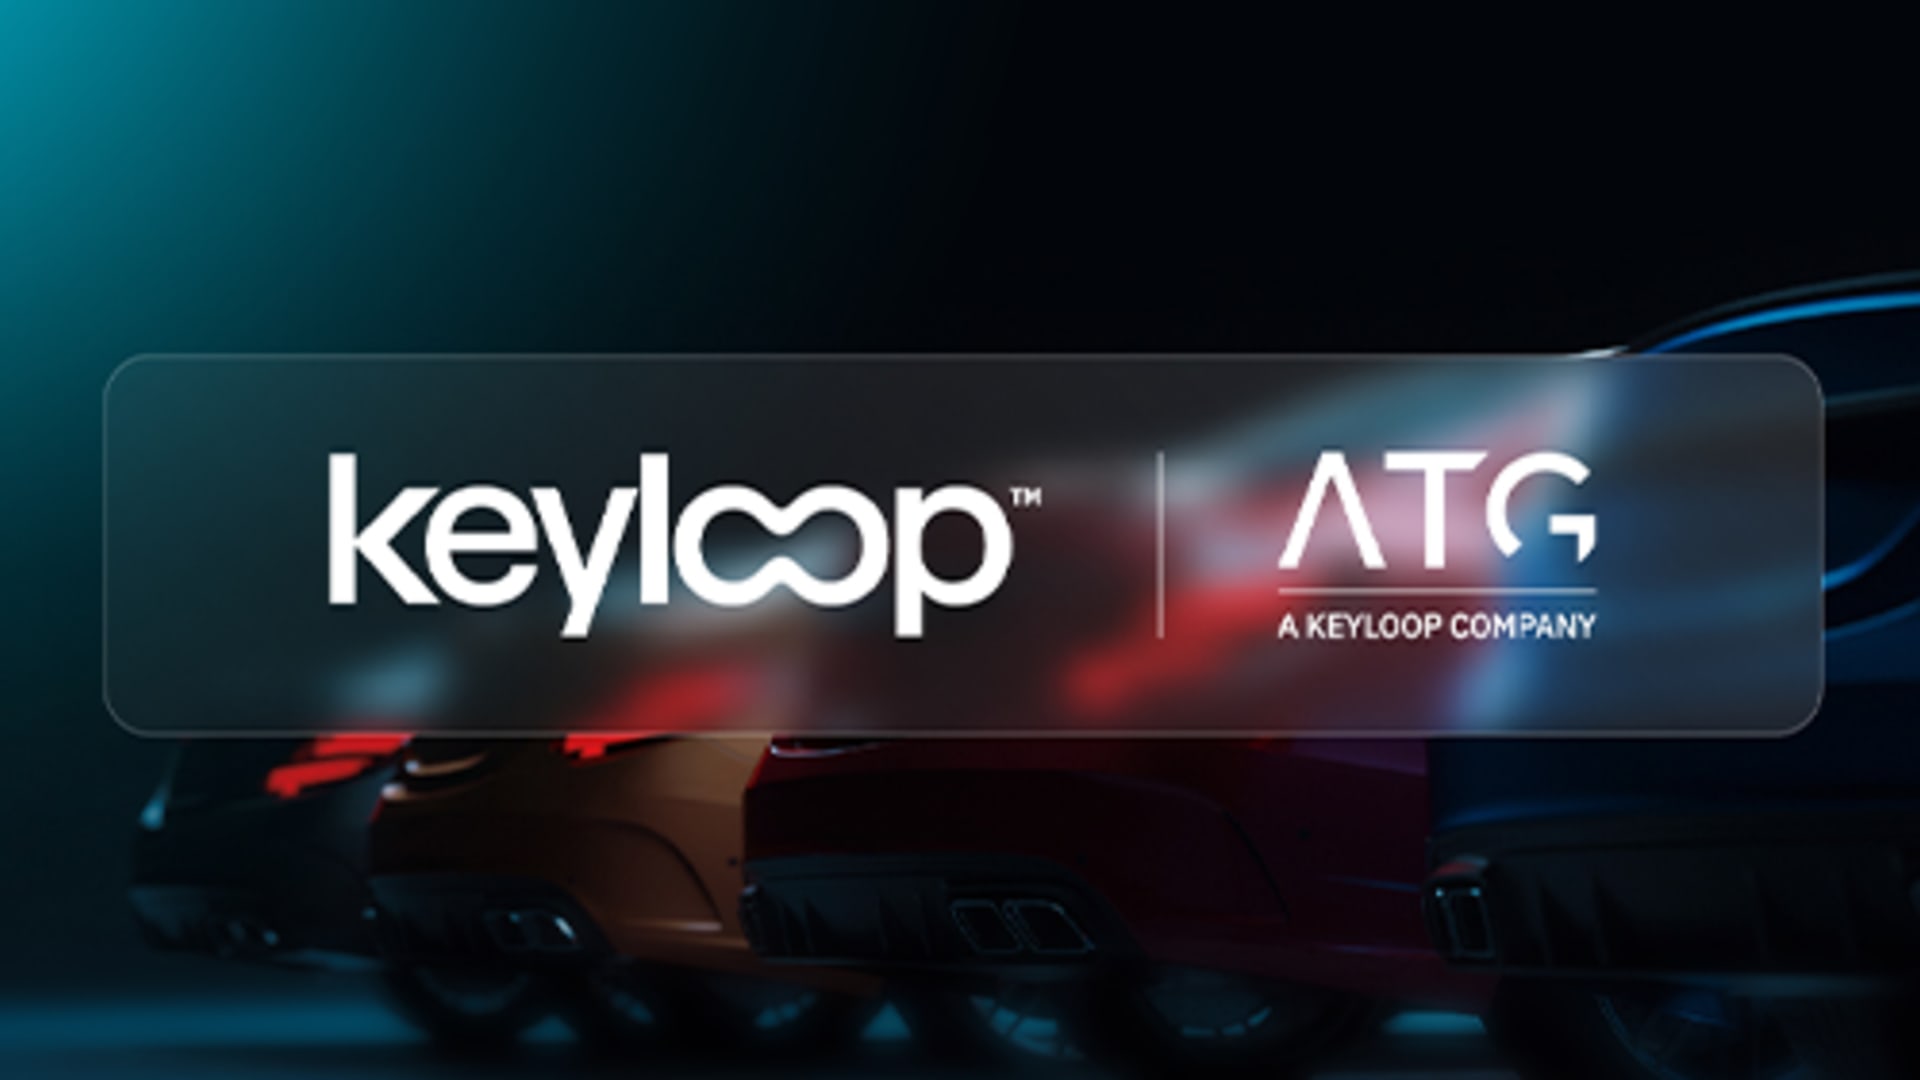 ATG | Keyloop